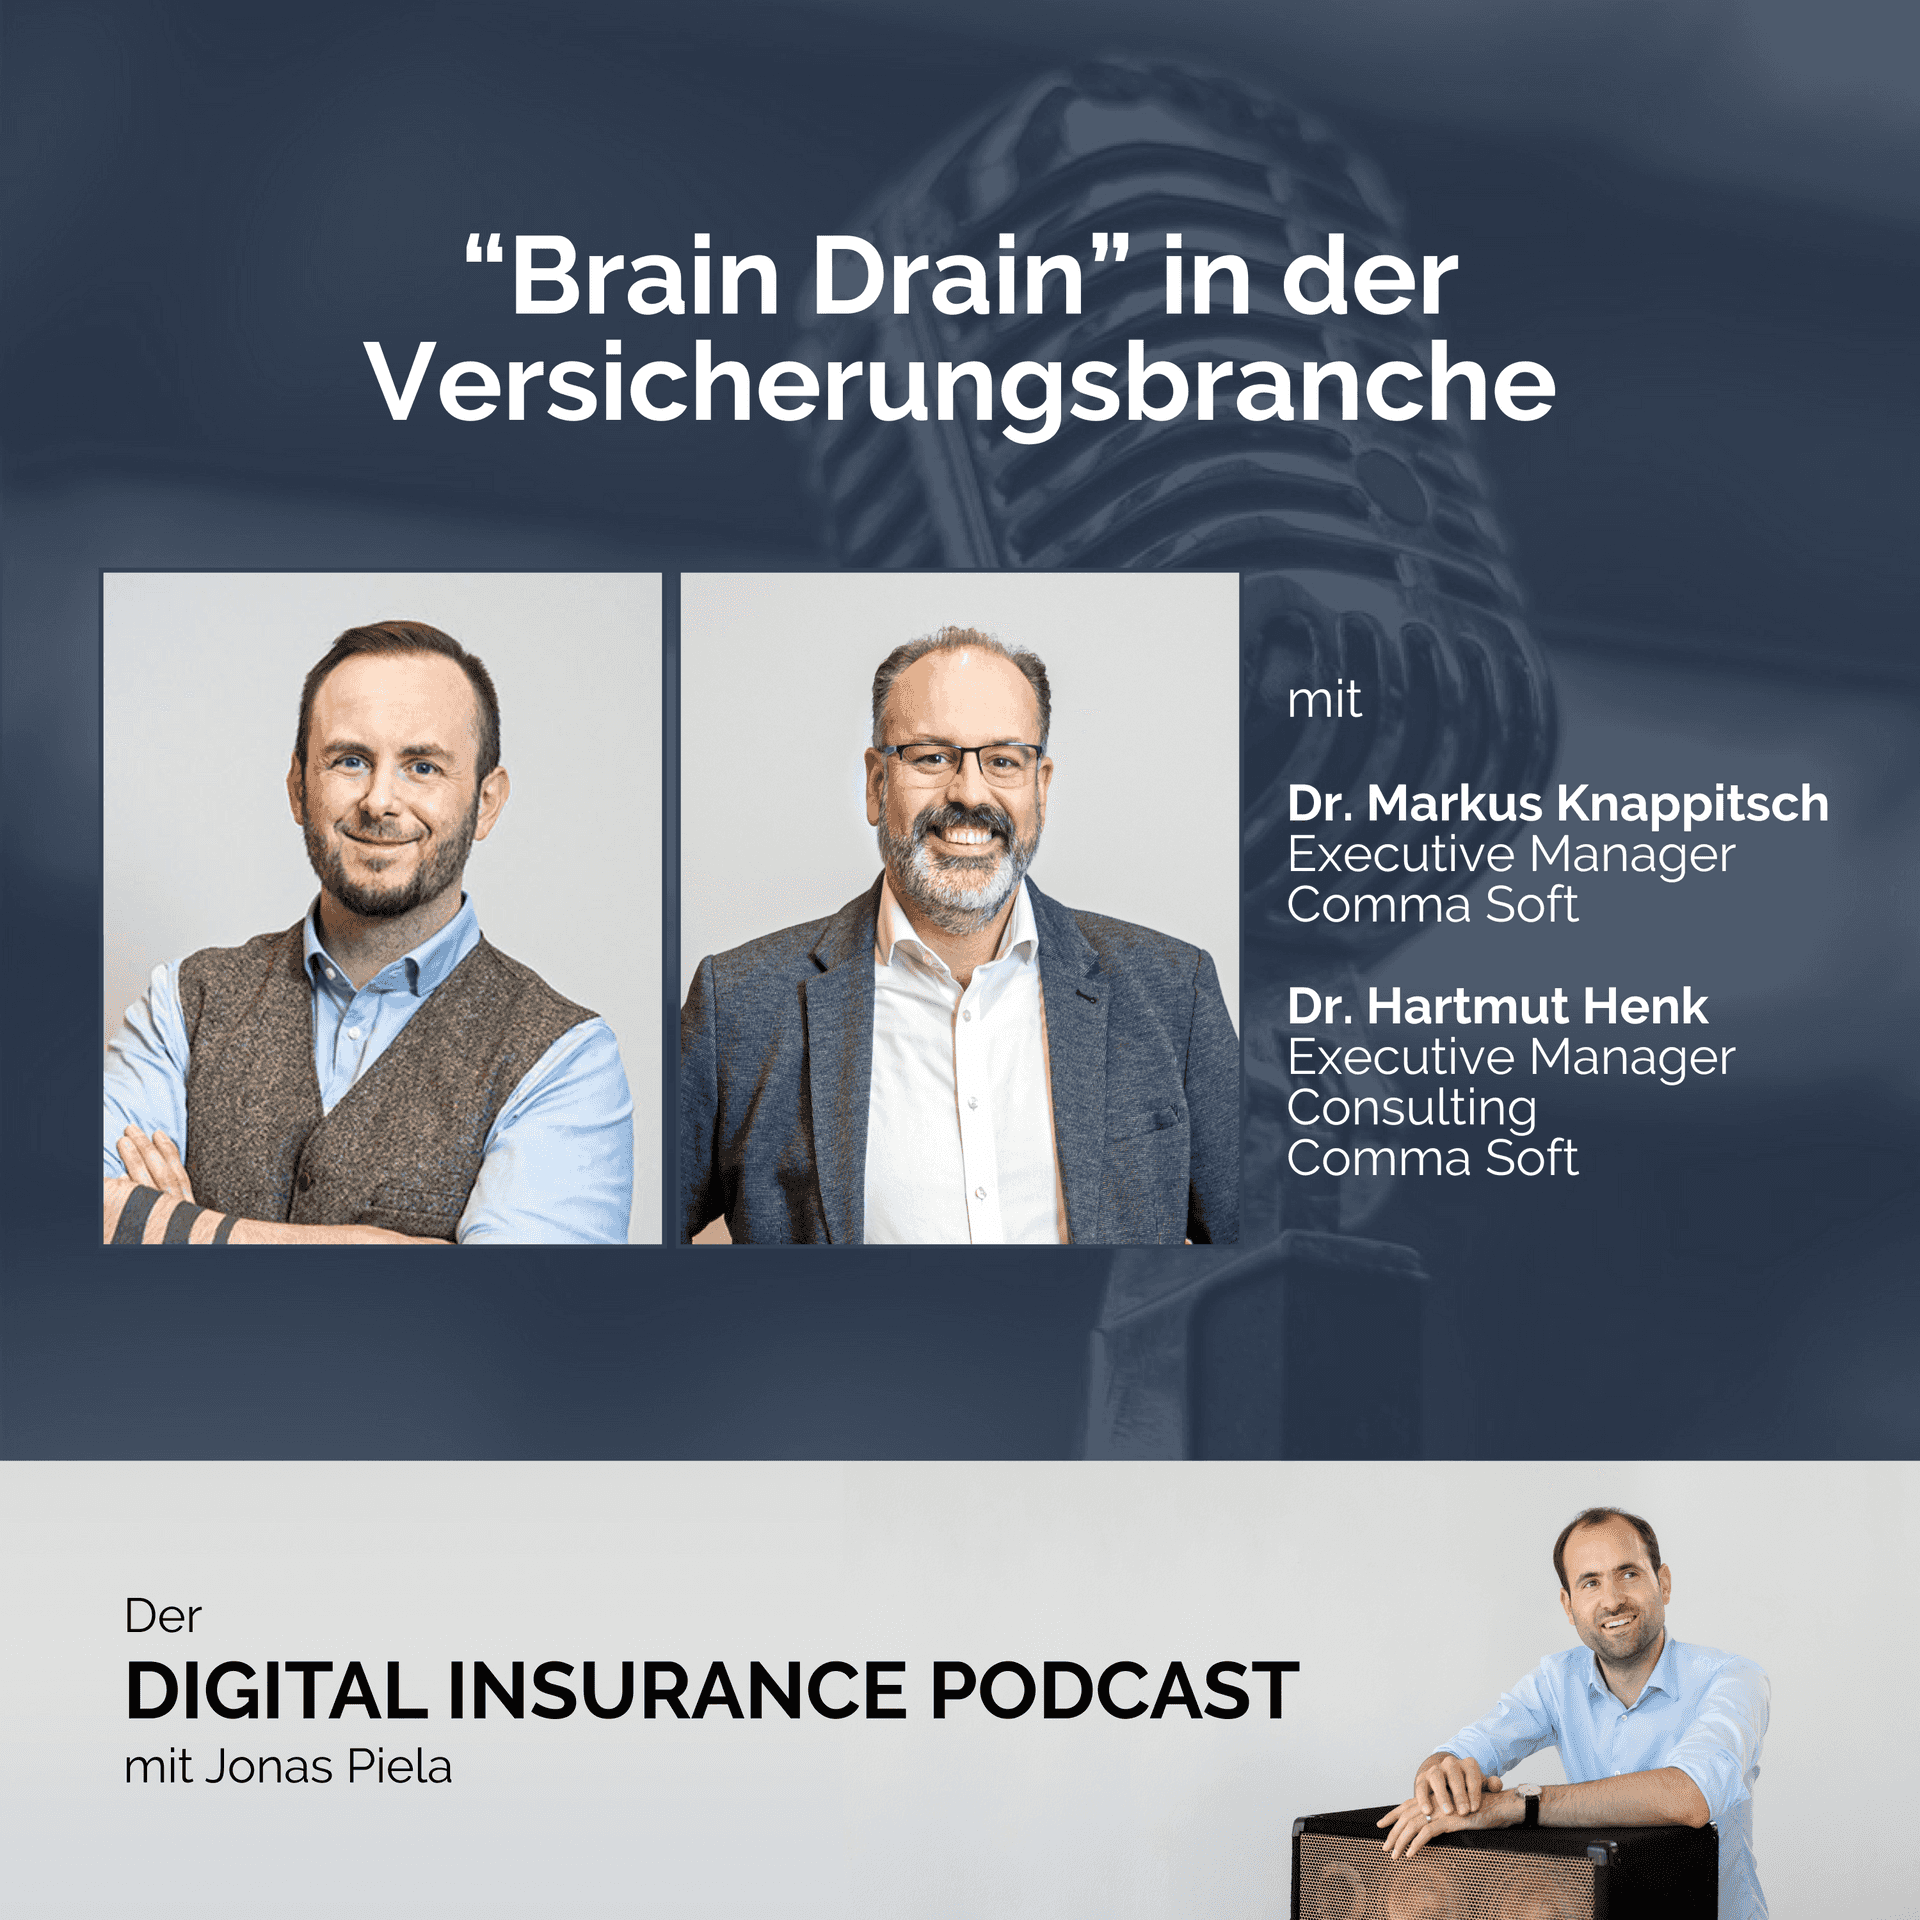 “Brain Drain” in der Versicherungsbranche - mit Dr. Markus Knappitsch und Dr. Hartmut Henk